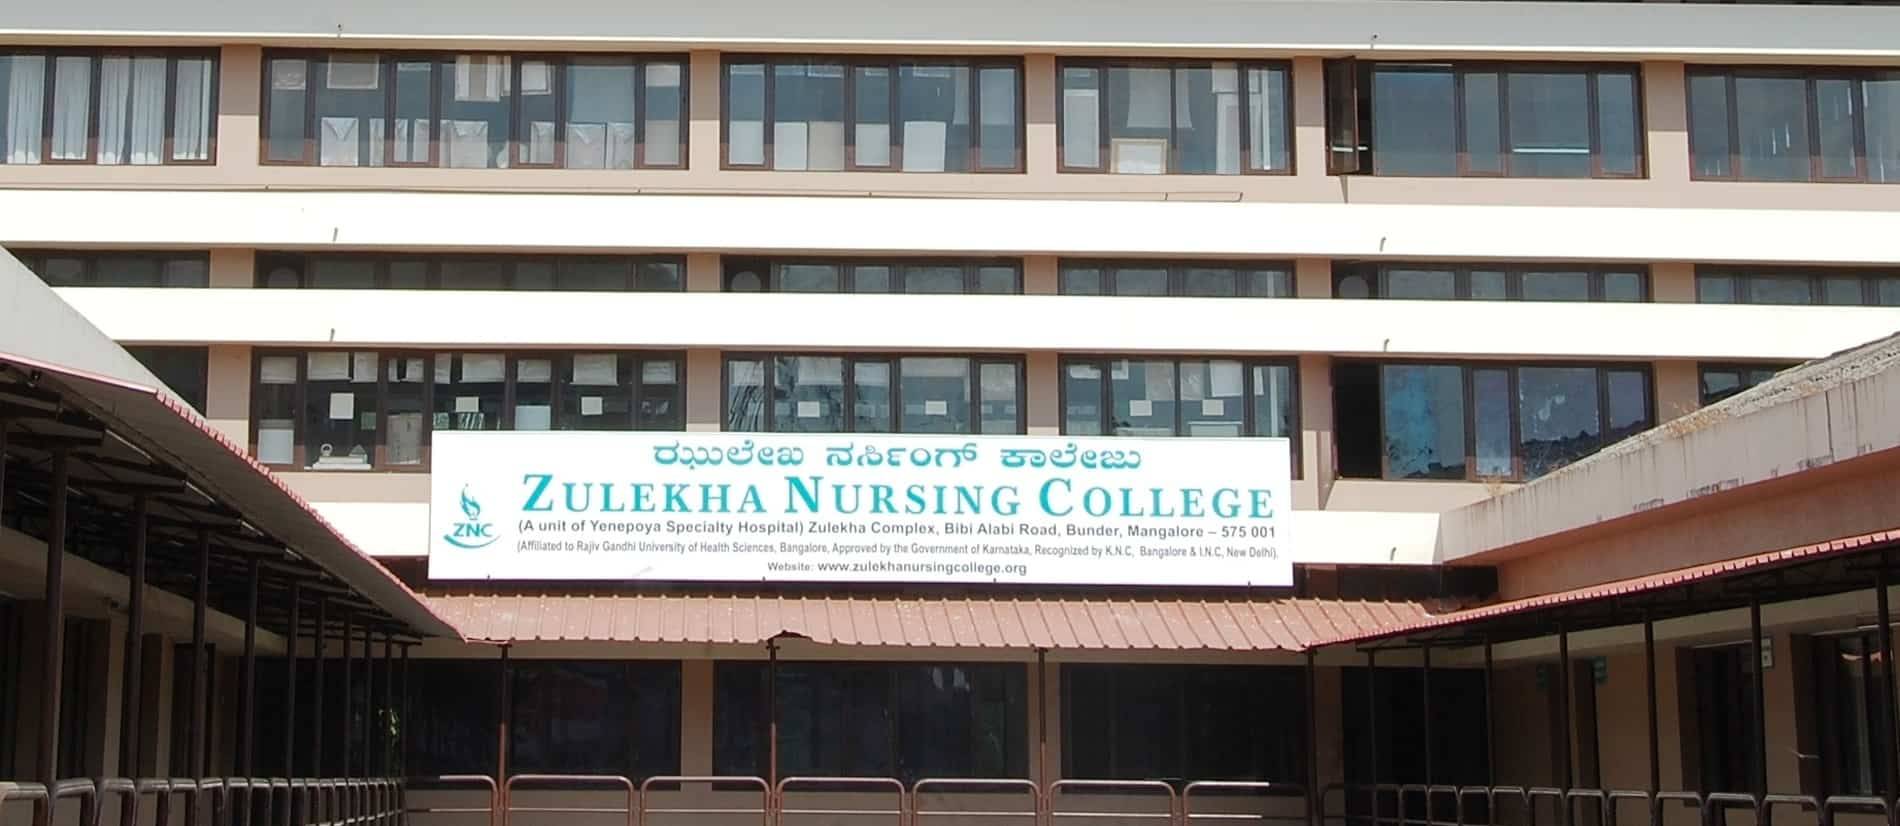 Zulekha Nursing College